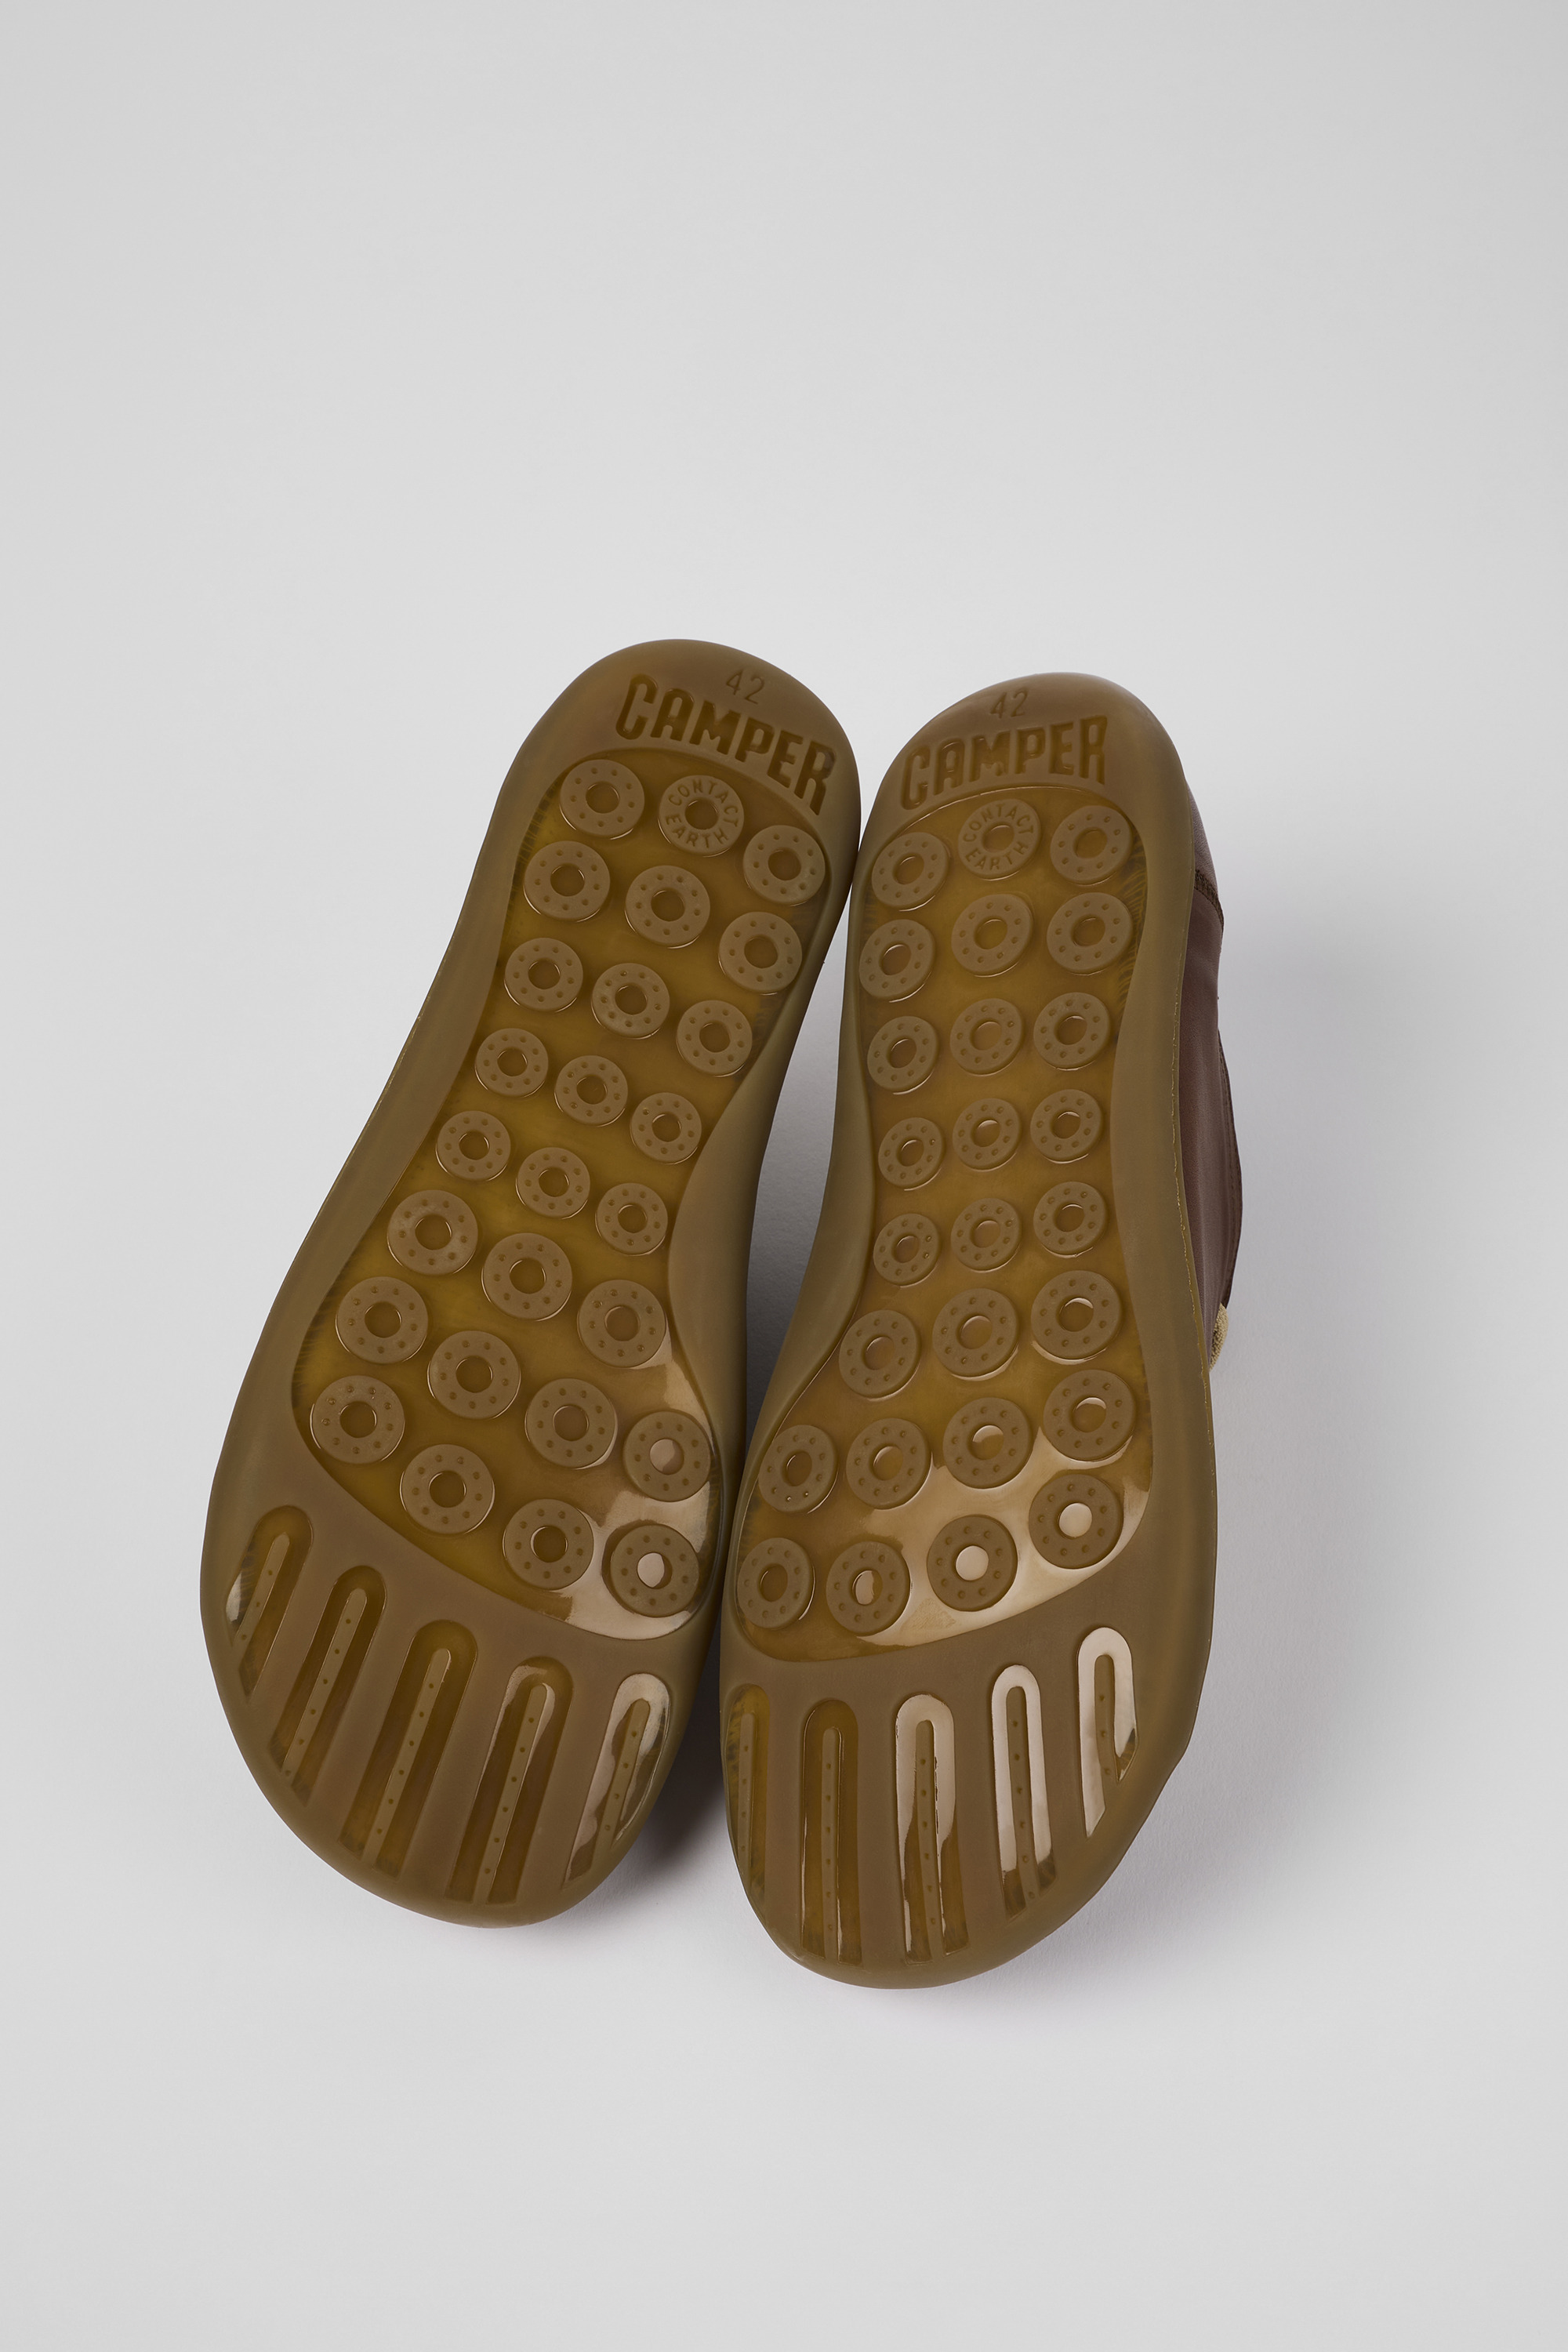 Camper Peu Cami In Dark Brown  Mens Slip on Elasticated Comfort Shoes –  4feetshoes